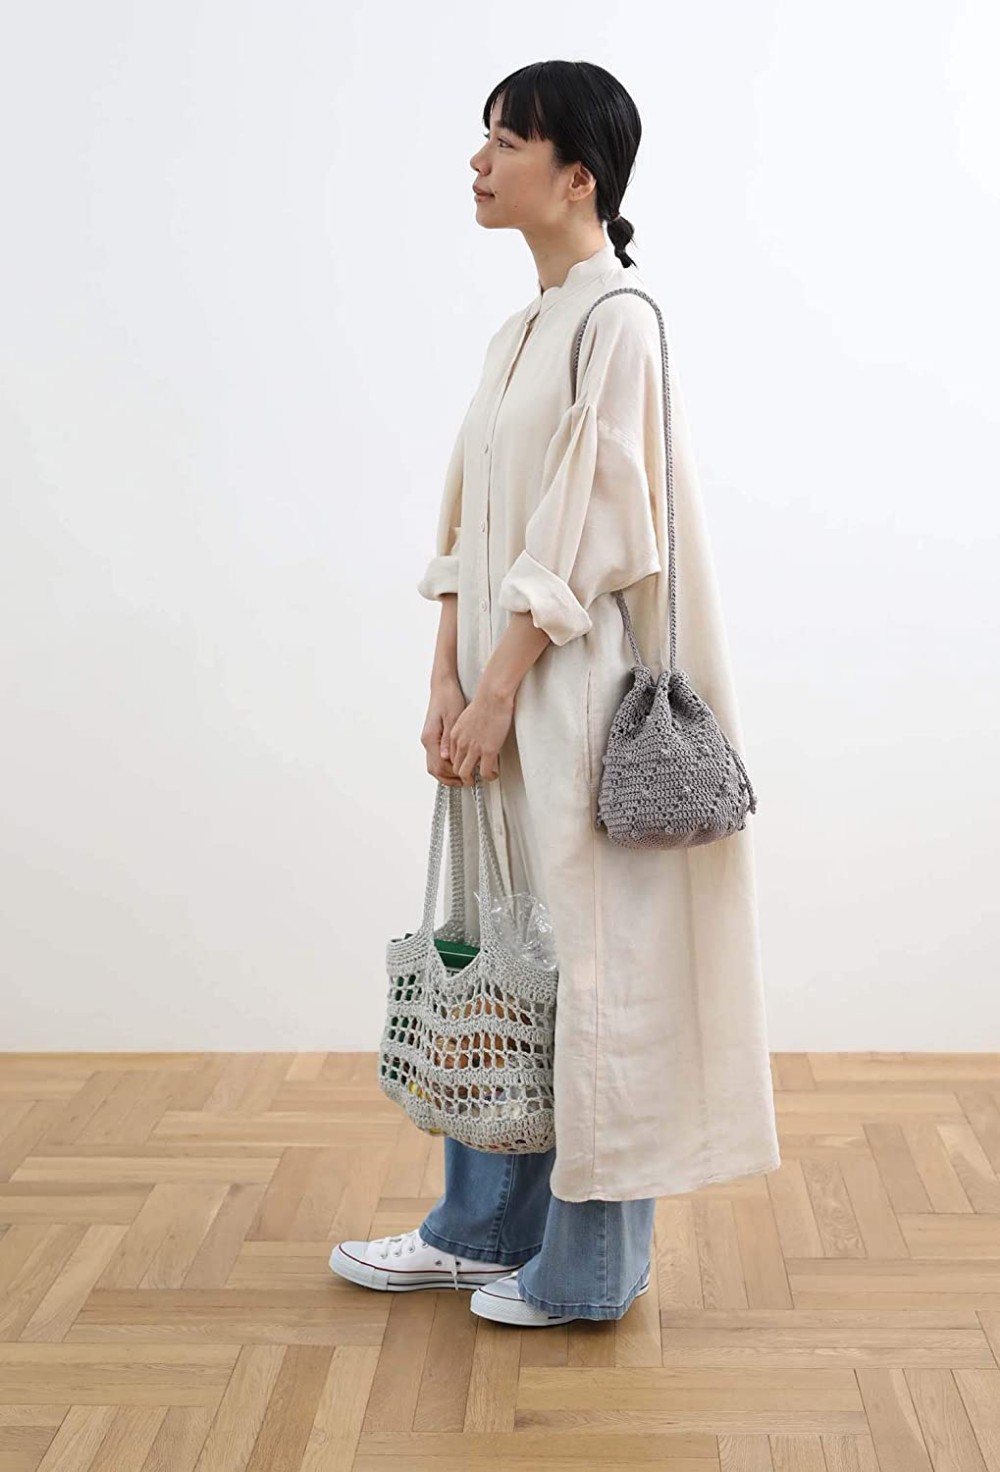 Crochet eco bag and daily bag 